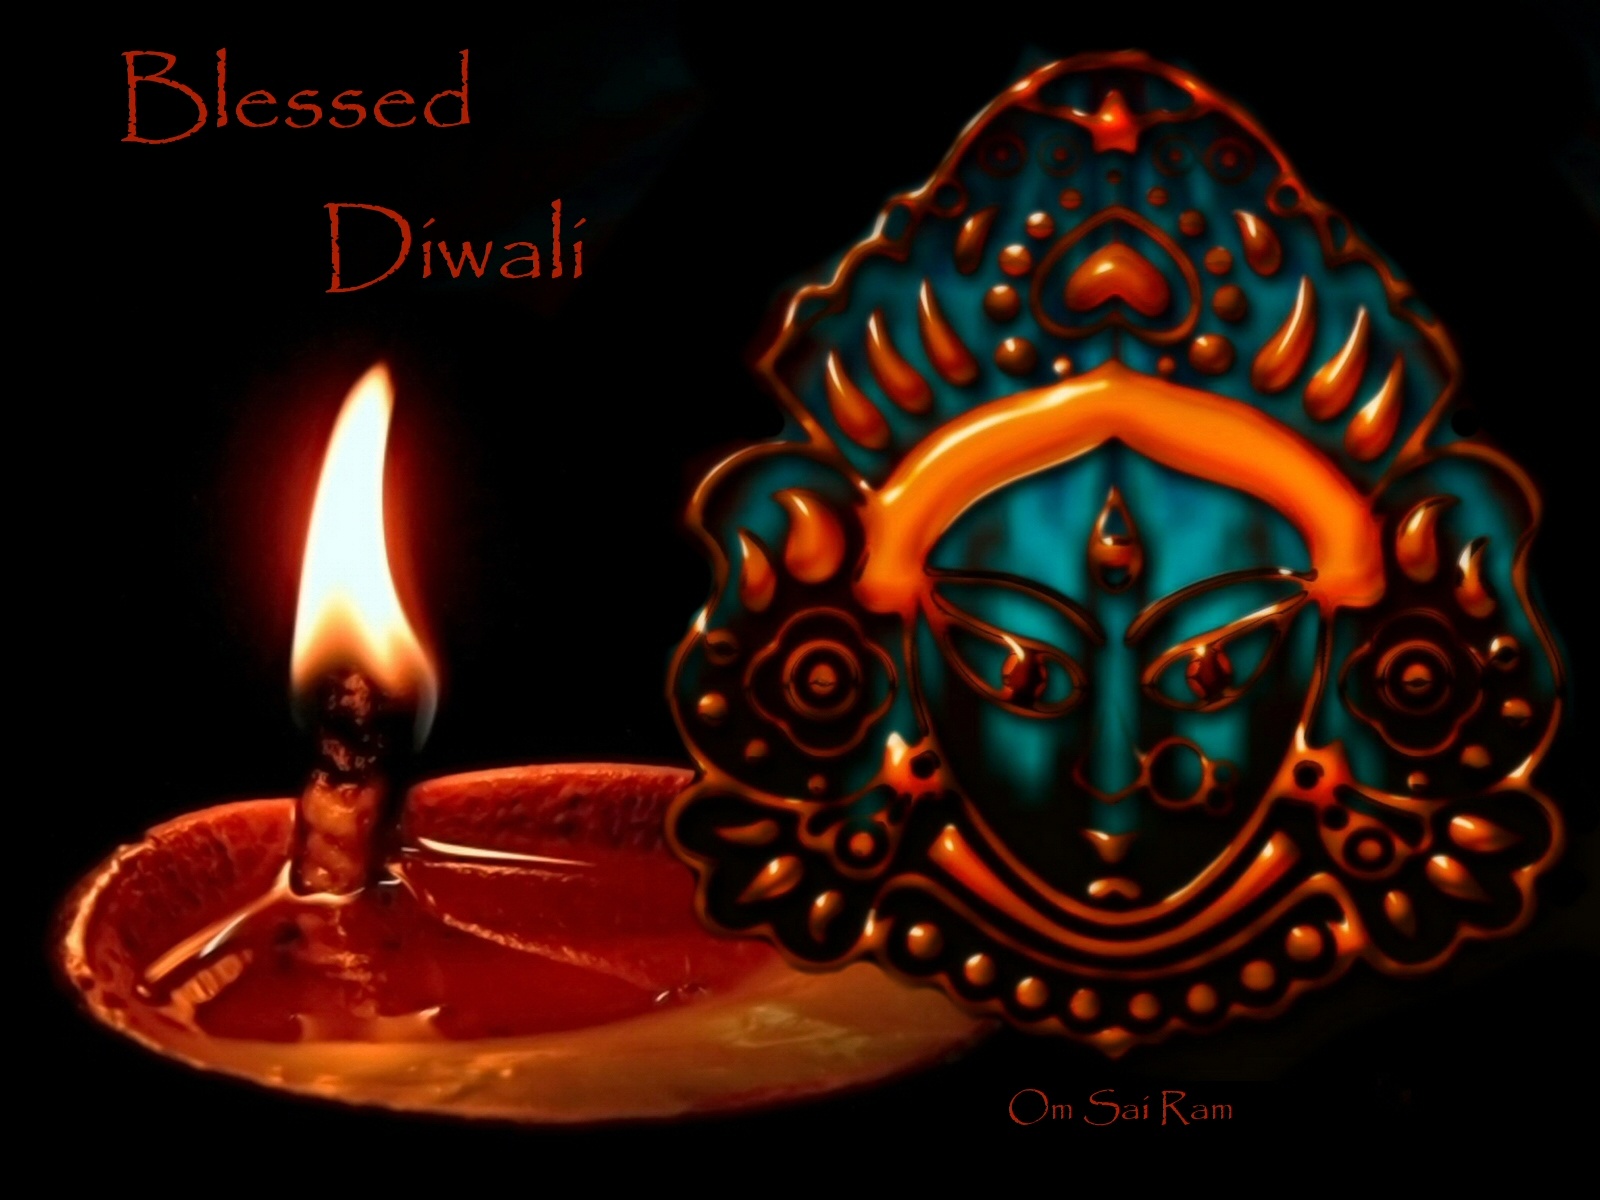 http://sathyasaibaba.files.wordpress.com/2009/09/blessed-diwali-durga.jpg